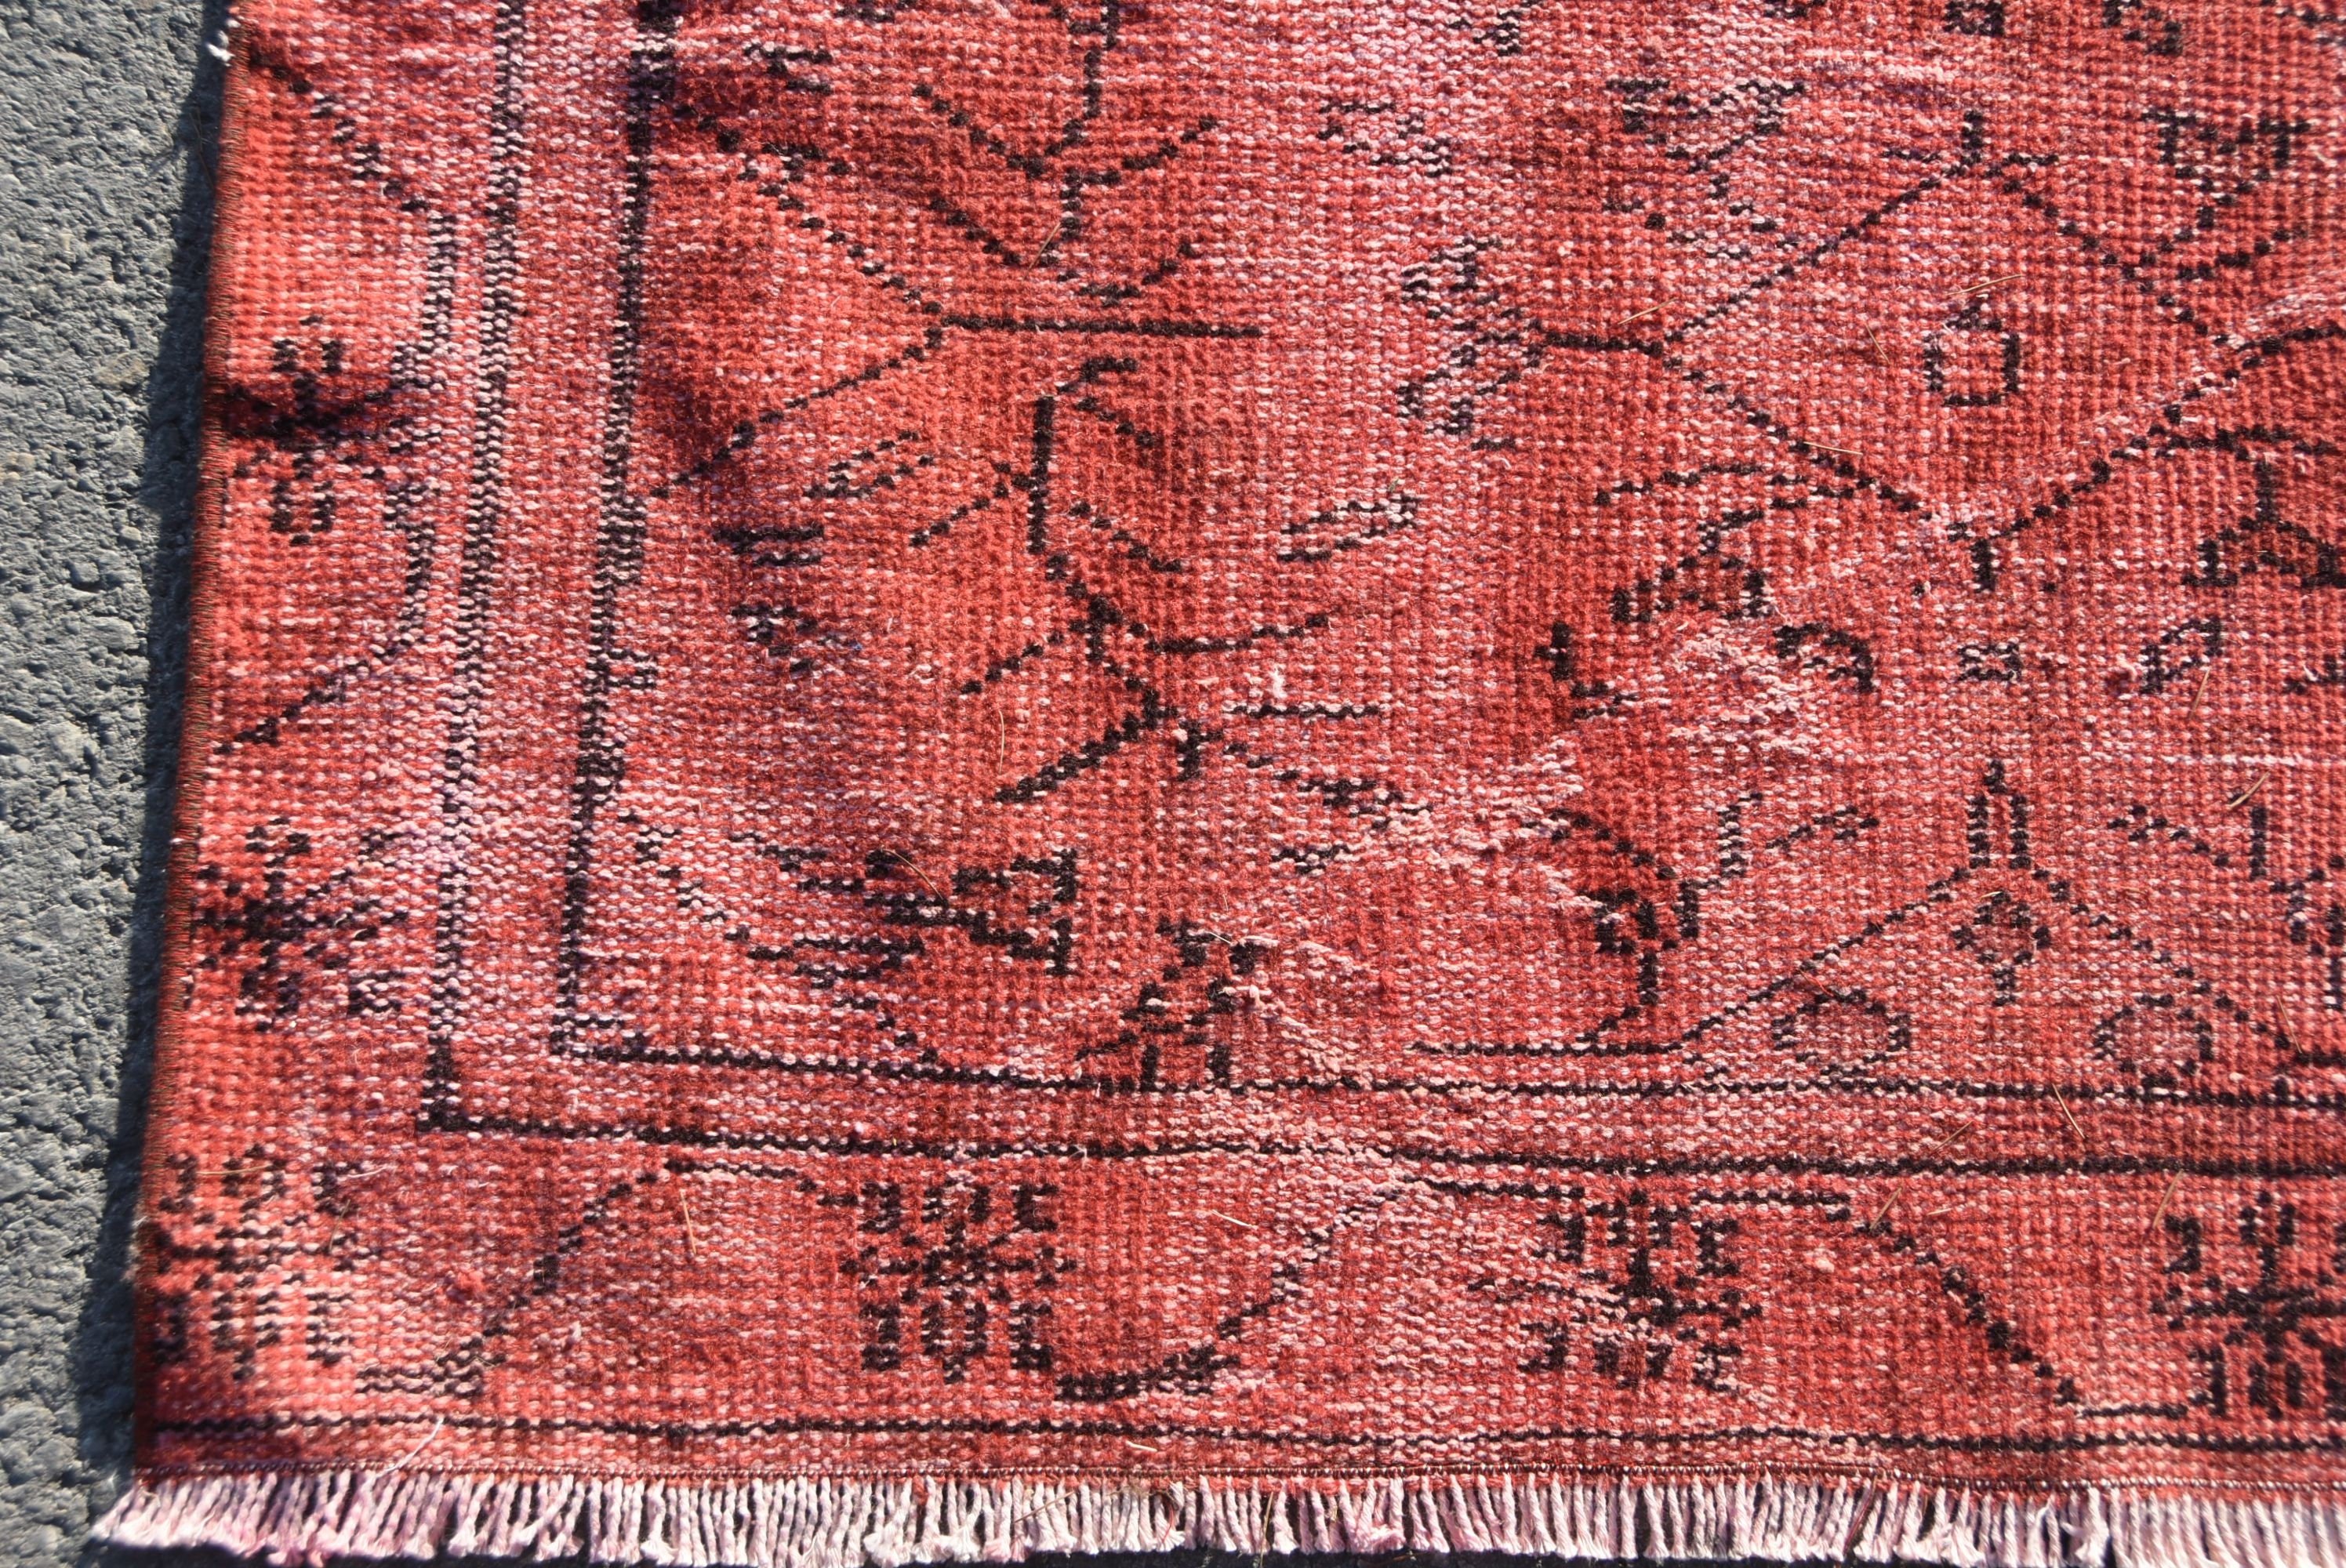 Moroccan Rug, Vintage Rugs, Red Kitchen Rugs, 3.6x7.4 ft Area Rug, Indoor Rug, Turkish Rug, Cool Rugs, Nursery Rug, Rugs for Bedroom